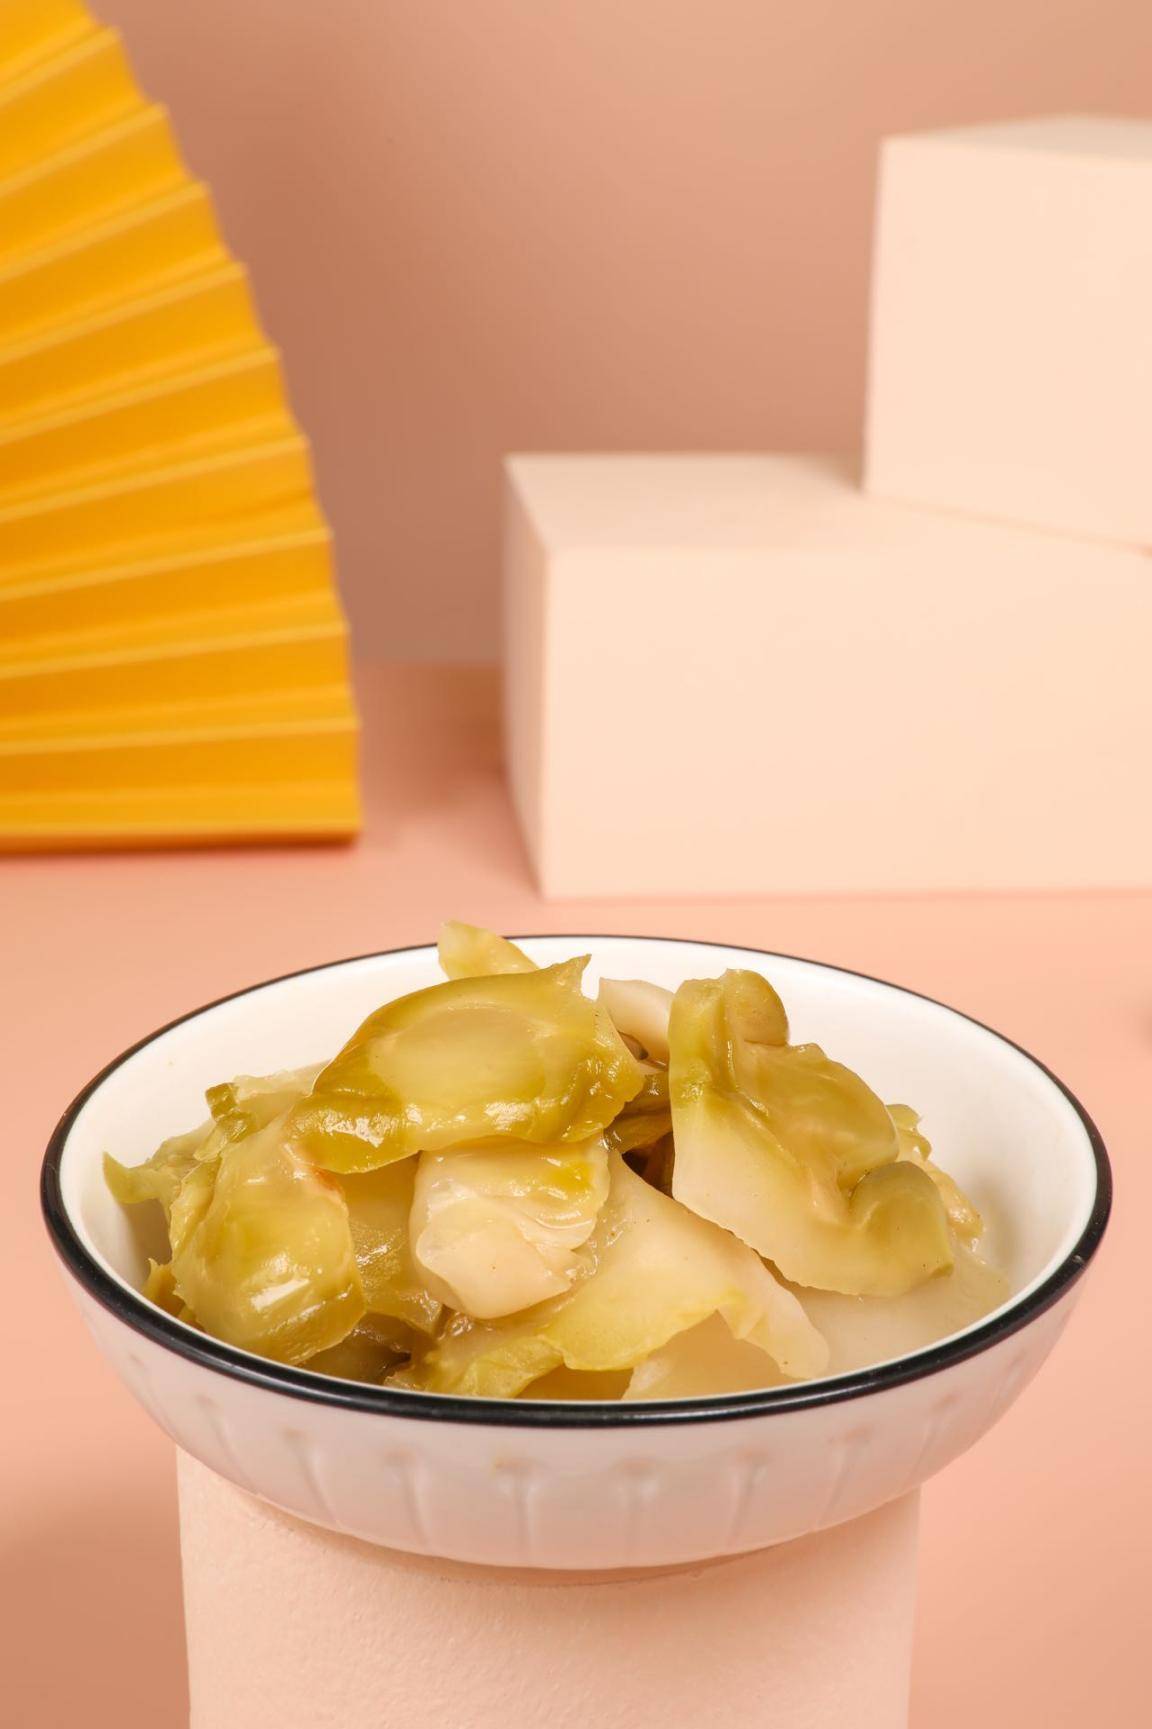 乌江 原味榨菜片 | WJ Original Pickled 70g - HappyGo Asian Market